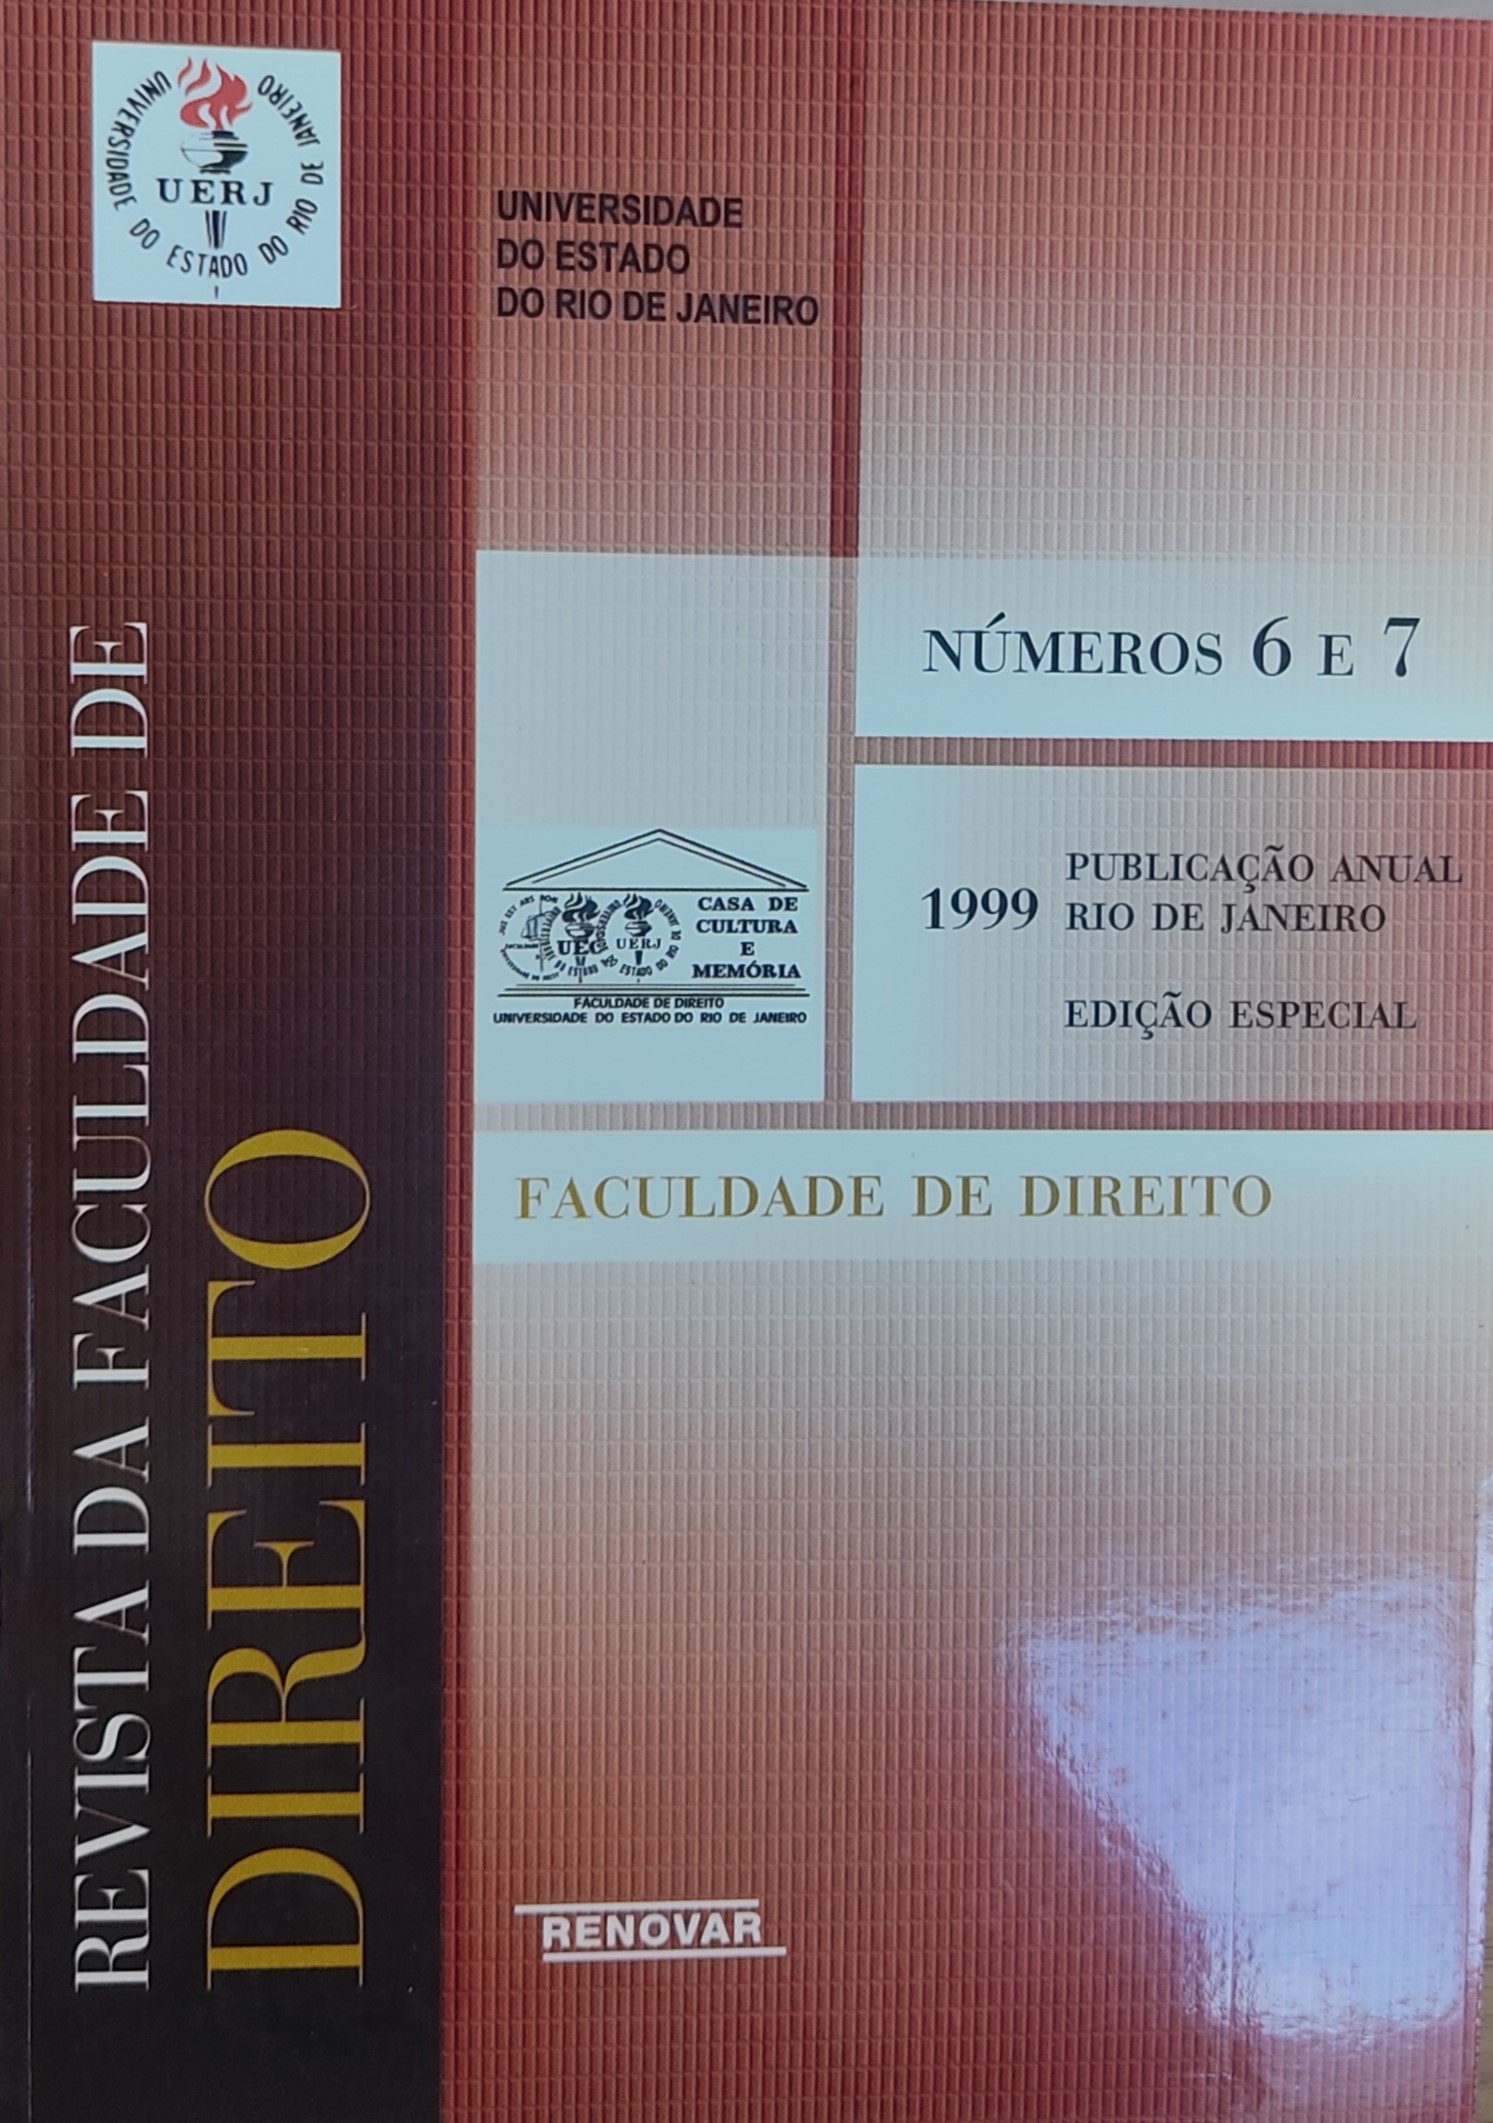 					Ver Núm. 6, 7 (1998) (1999): Revista da Faculdade de Direito da UERJ - RFD
				